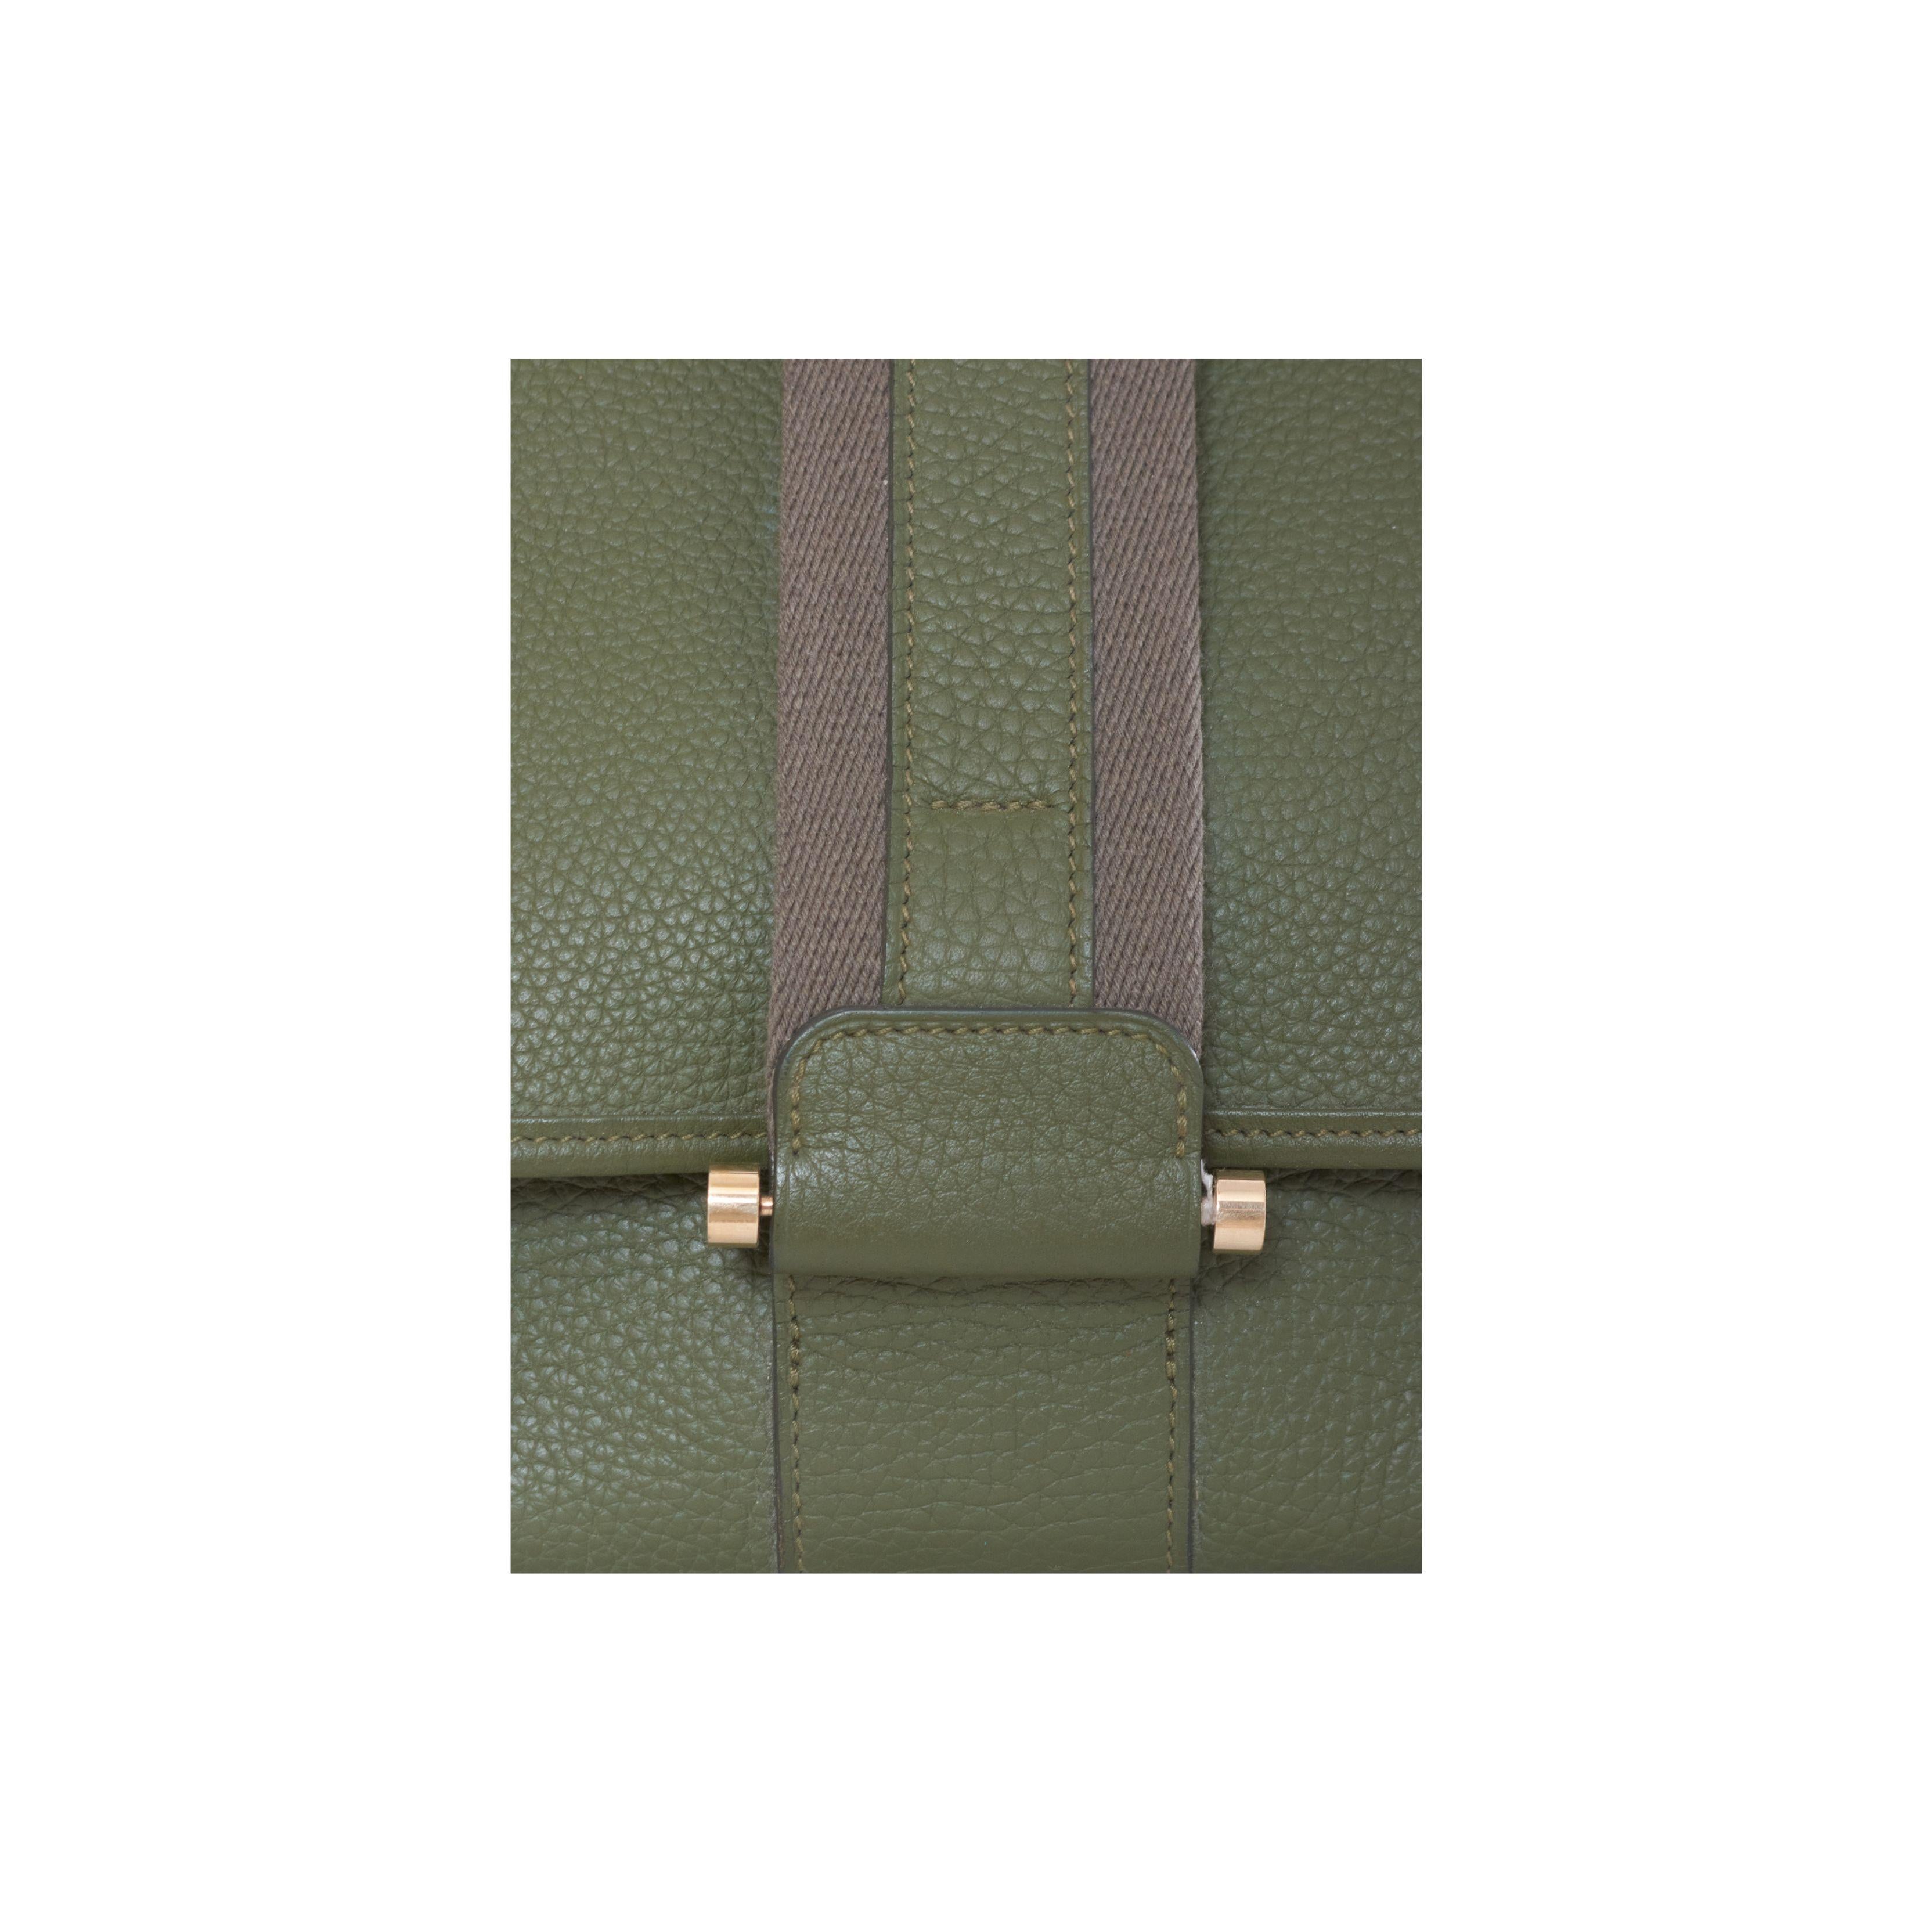 Die Bourlingue Umhängetasche von Hermès ist ein handgefertigtes Kunstwerk, das die Essenz von Luxus und Qualität verkörpert. Die Tasche ist aus hochwertigem grünem, genarbtem Leder gefertigt und hat eine einzigartige, zarte Oberflächenstruktur.